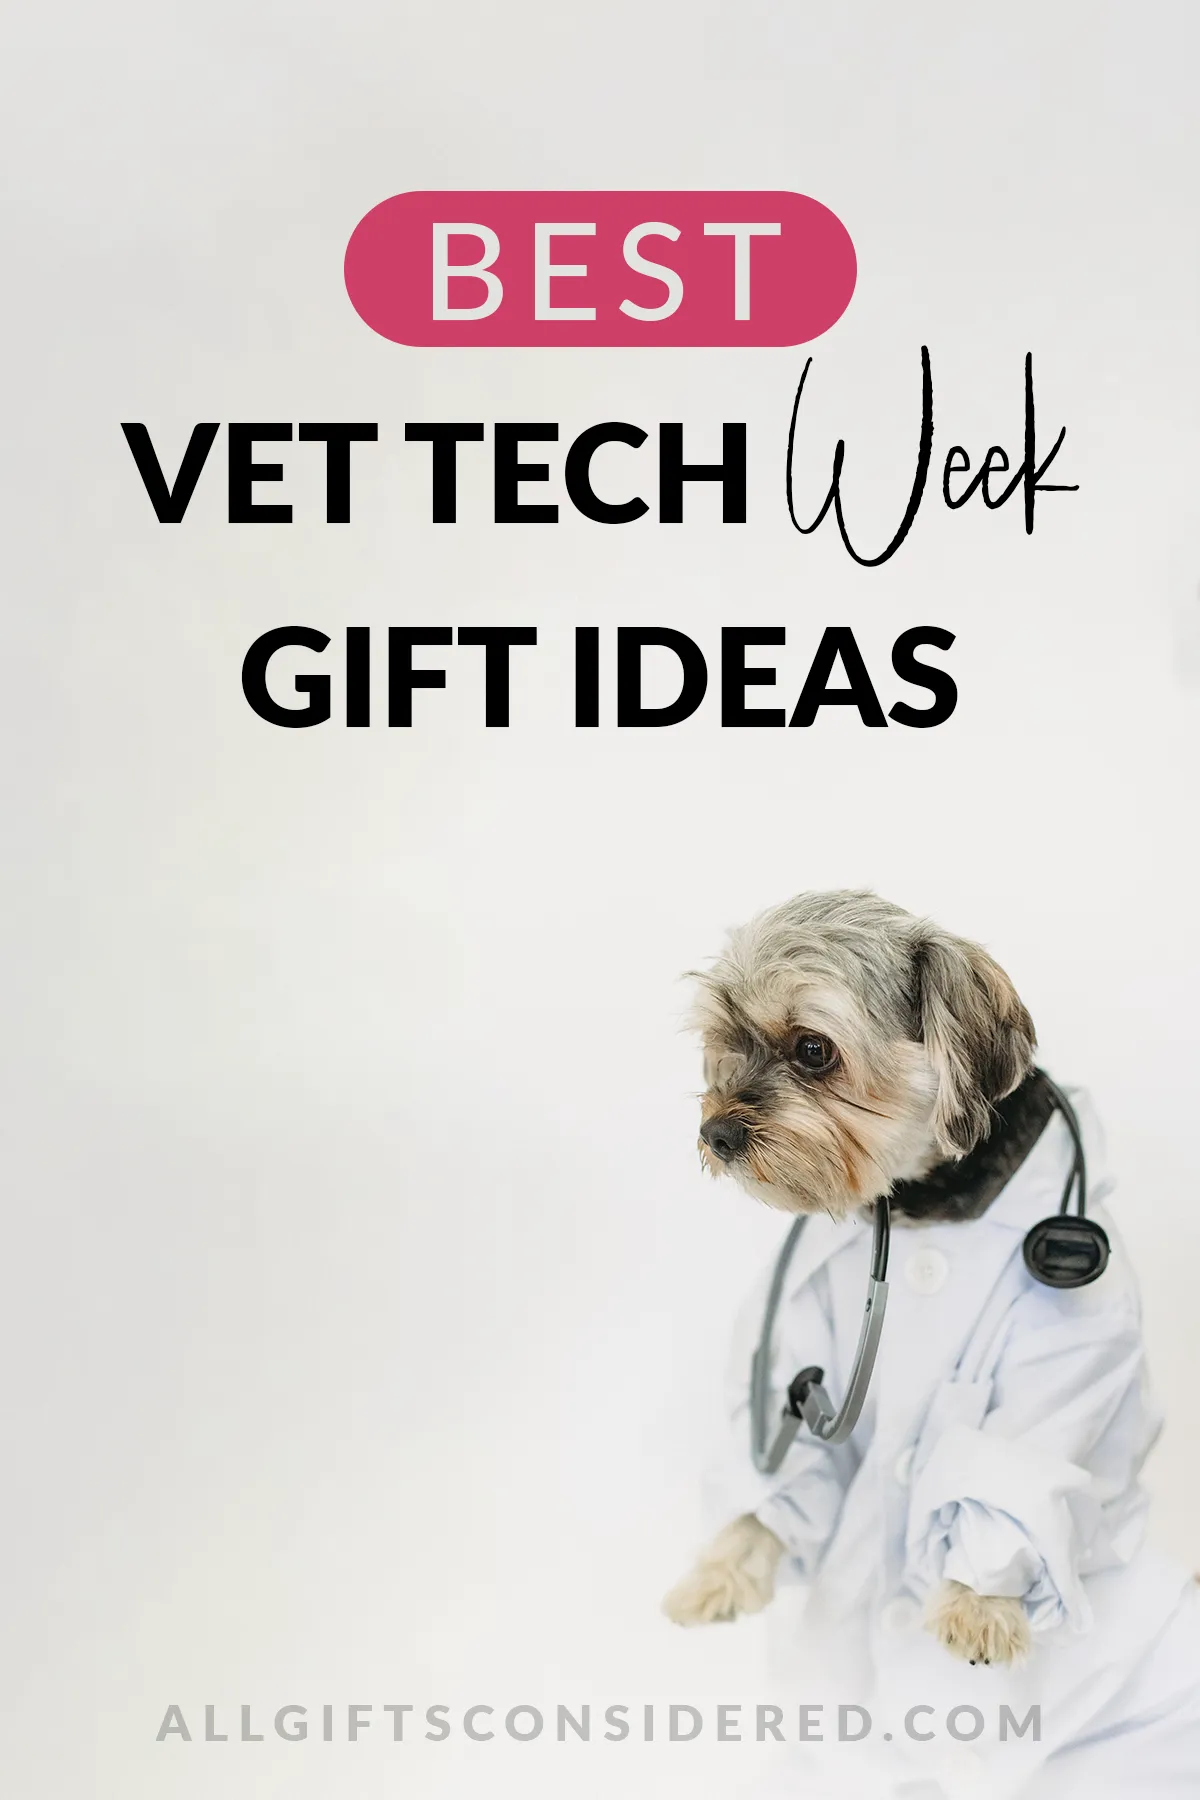 50 Best Vet Tech Week Gift Ideas for a Sensational 2023 » All Gifts